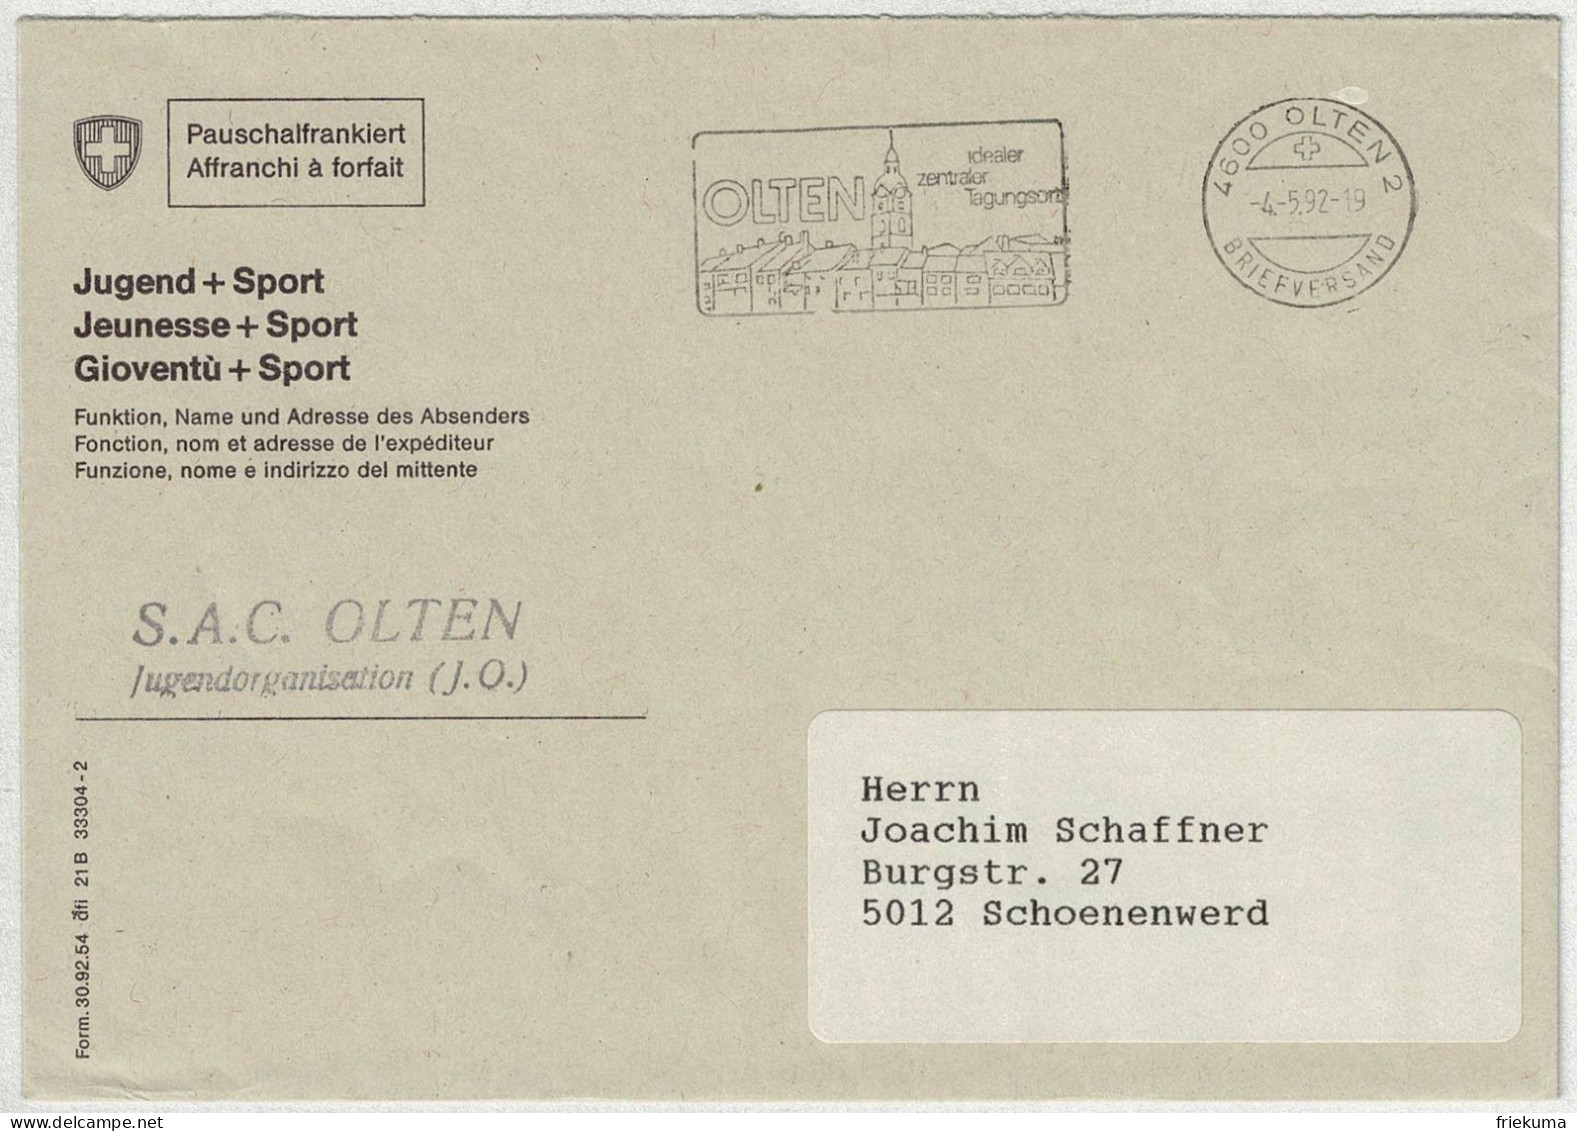 Schweiz 1992, Brief Pauschalfrankiert Olten - Schönenwerd - Poststempel